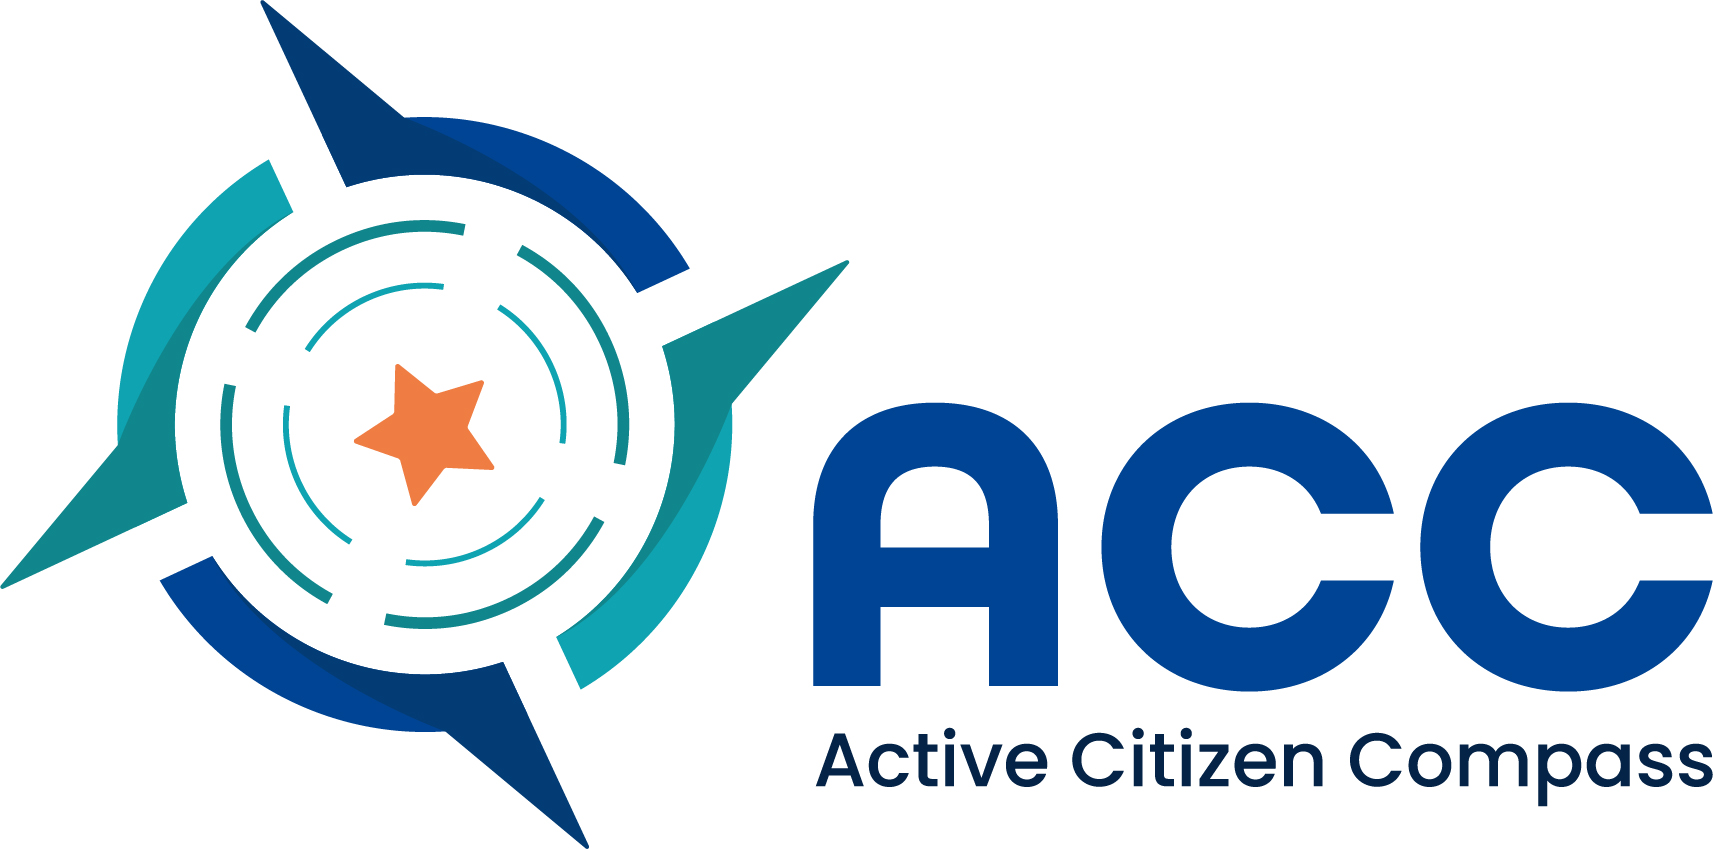 Active Citizen Compass